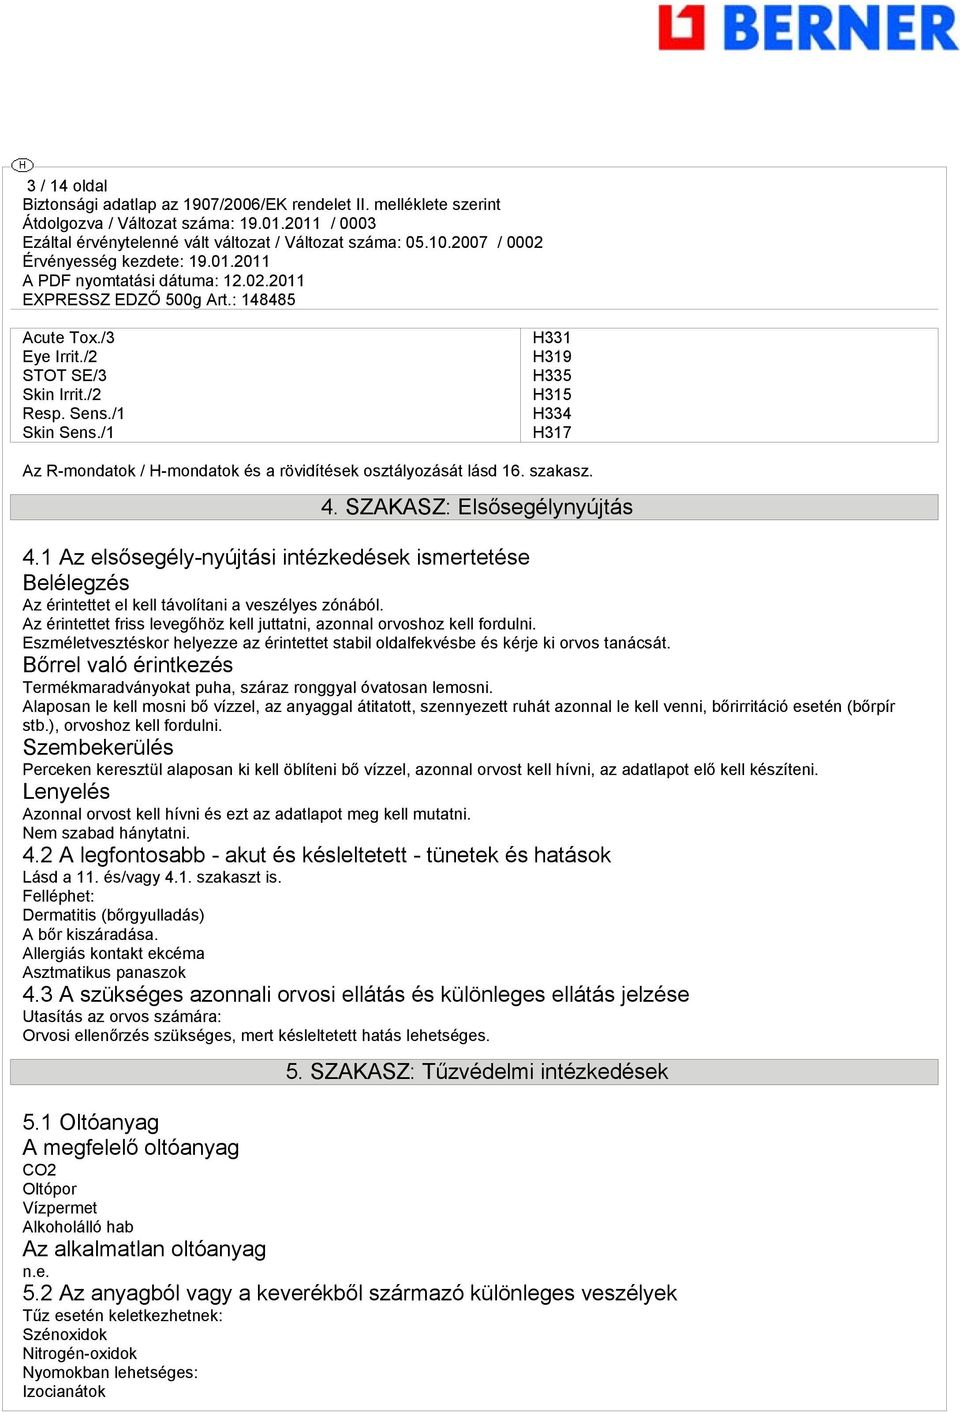 Biztonsági adatlap az 1907/2006/EK rendelet II. melléklete szerint - PDF  Ingyenes letöltés